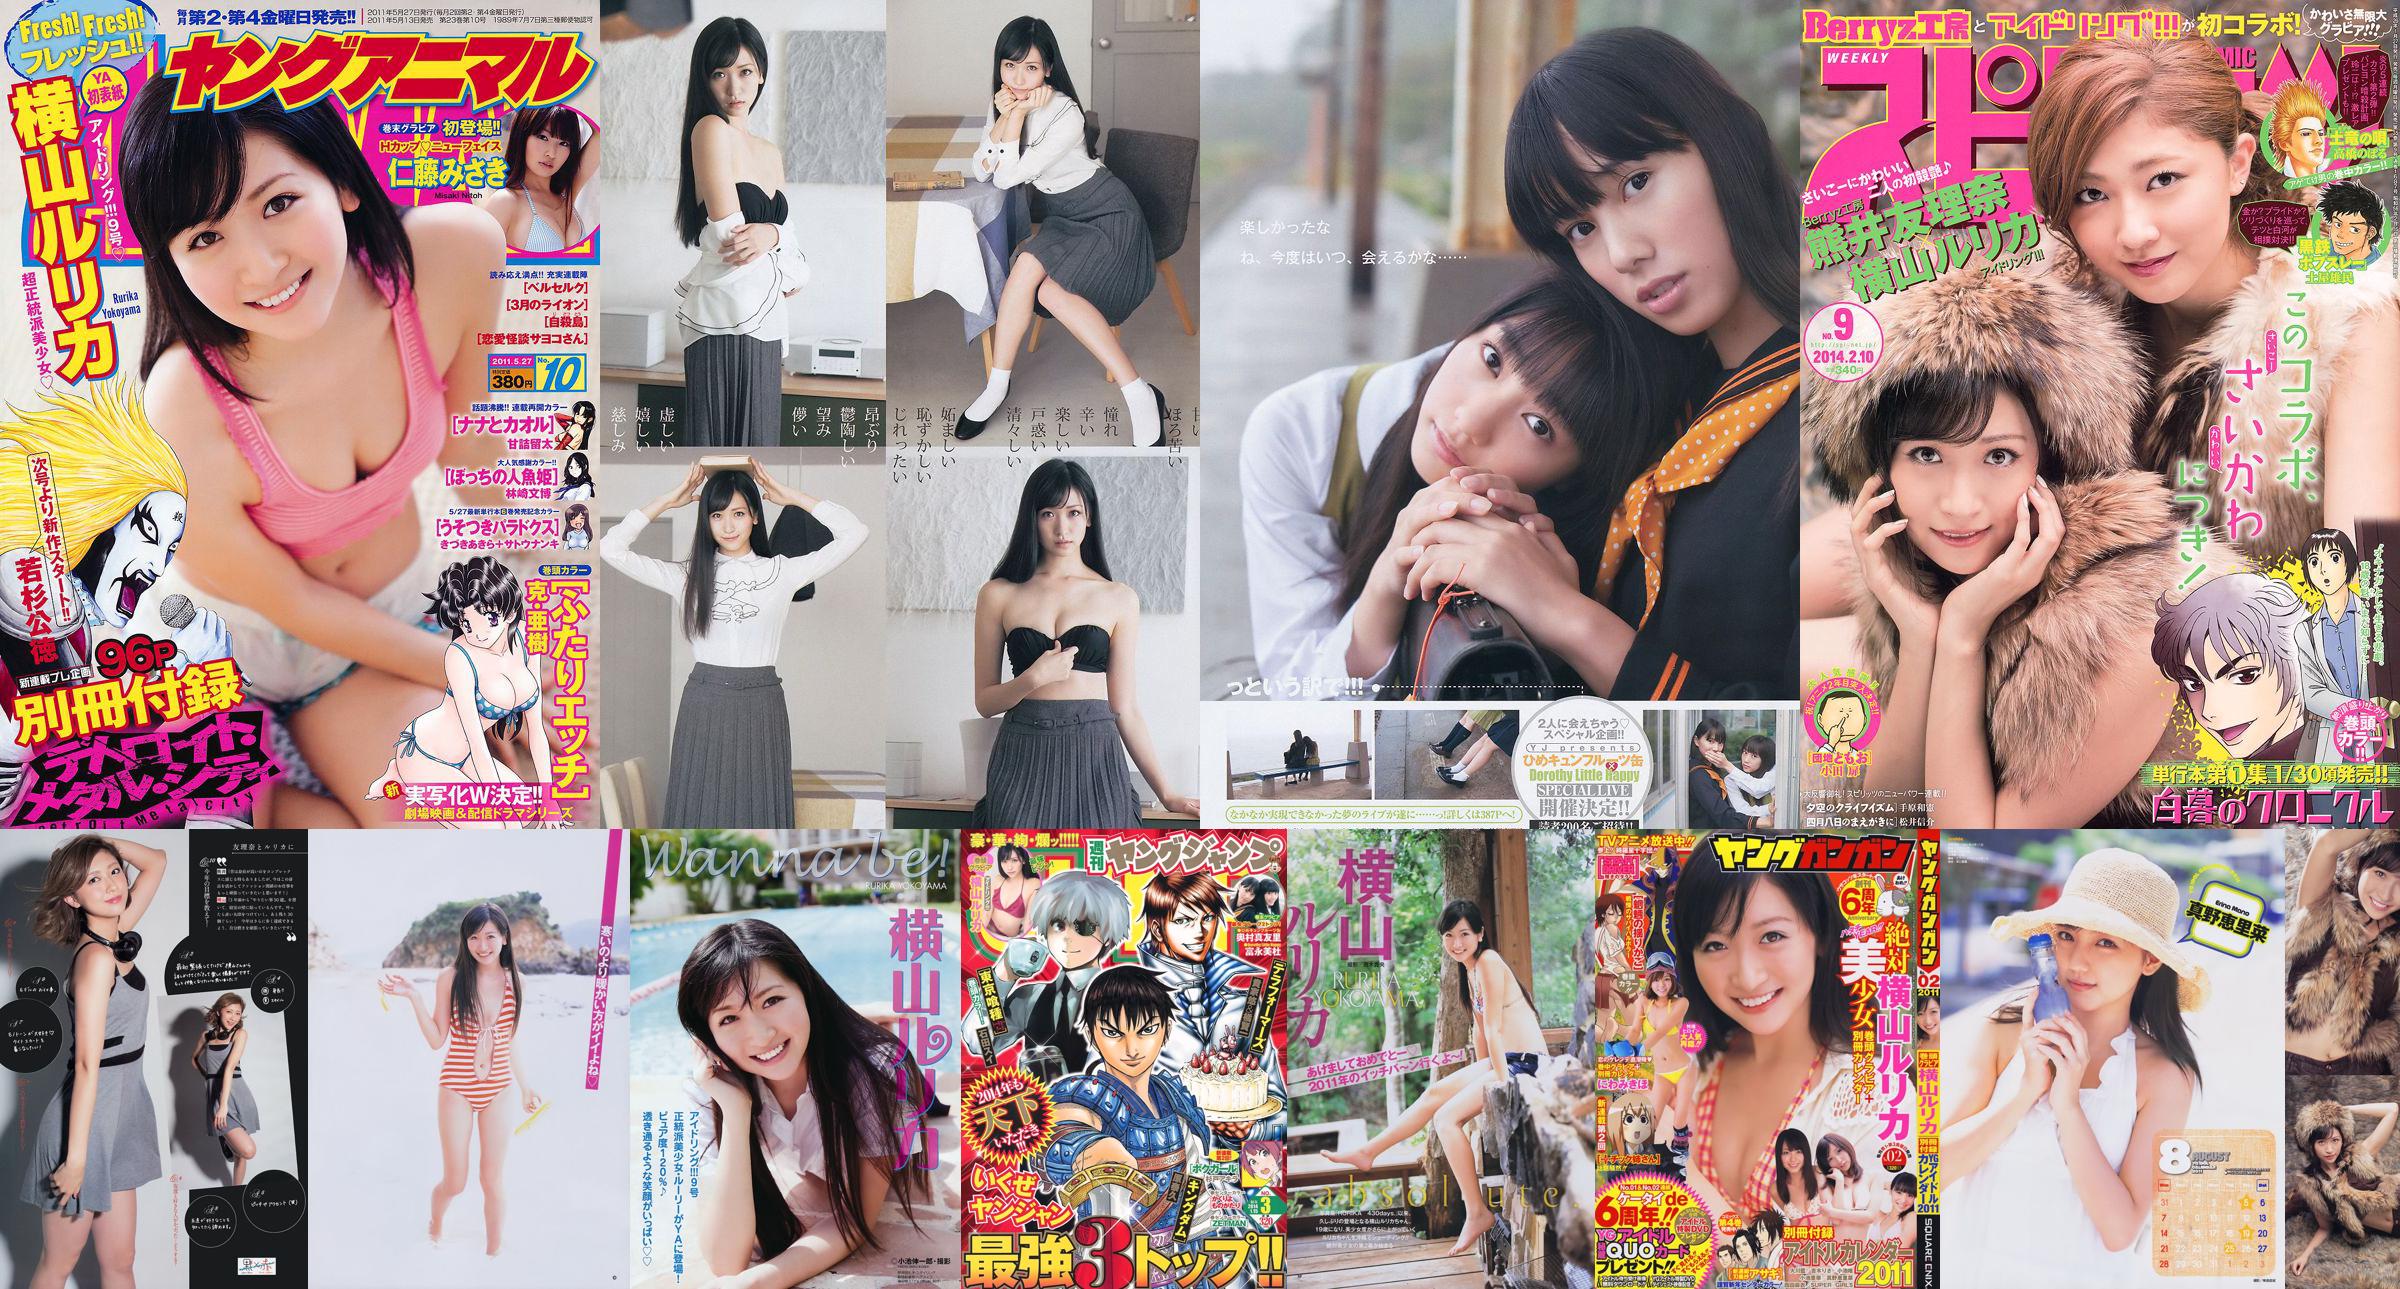 [Junger Gangan] Rurika Yokoyama 2011 No.02 Photo Magazine No.80c3d4 Seite 3